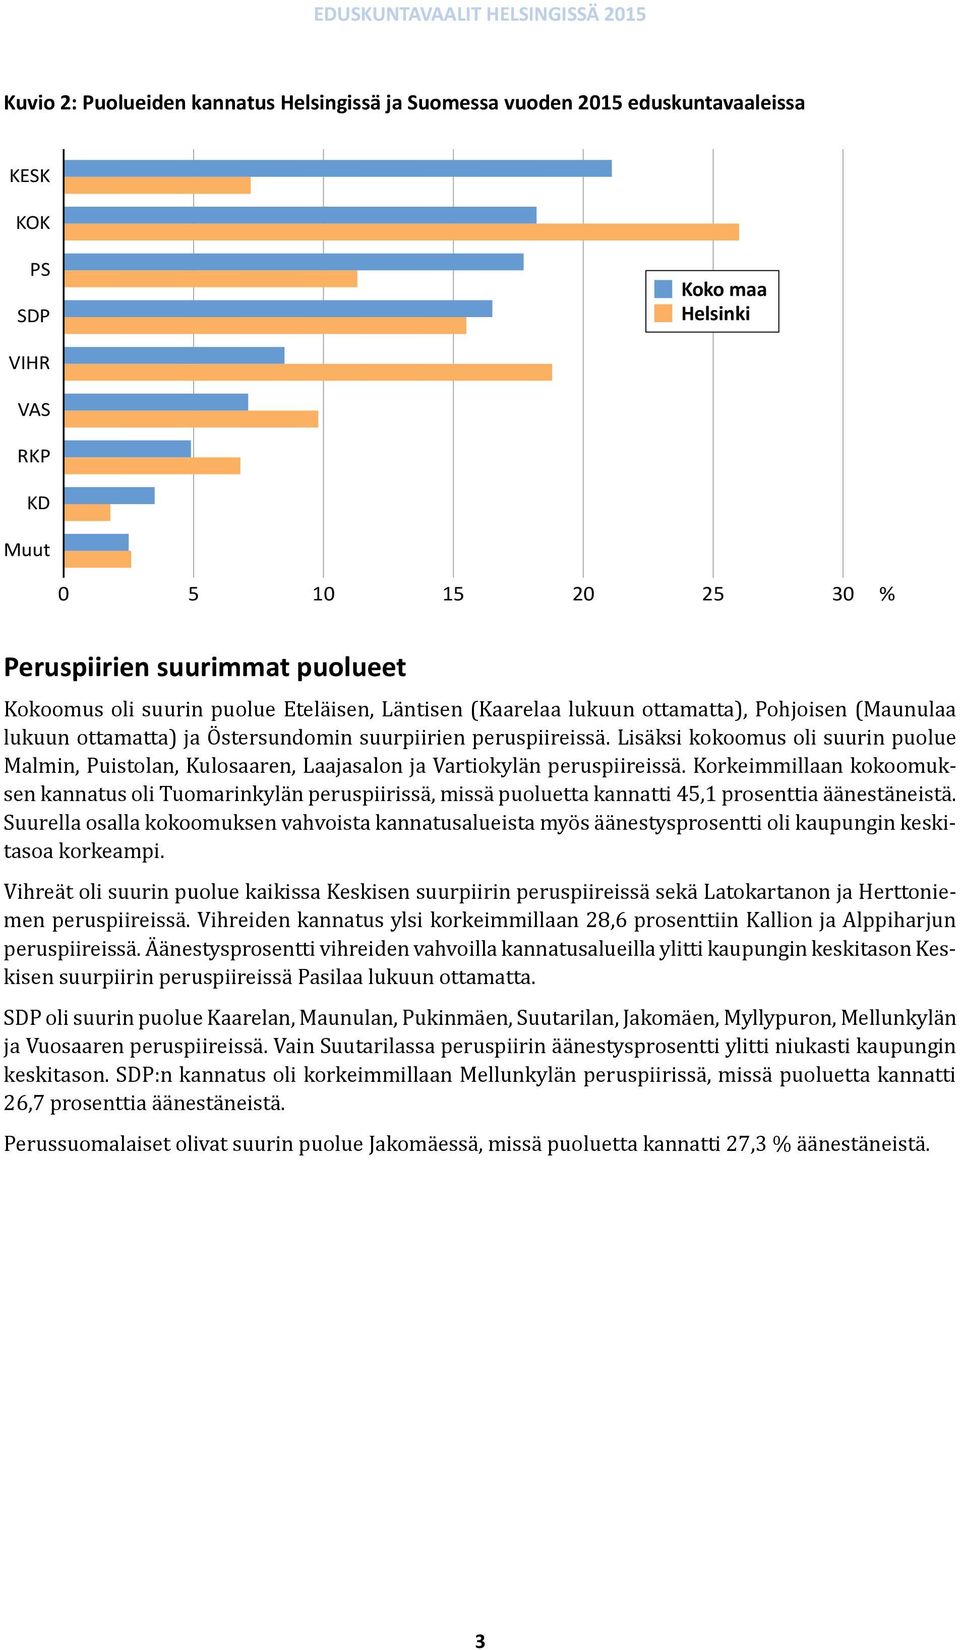 Lisäksi kokoomus oli suurin puolue Malmin, Puistolan, Kulosaaren, Laajasalon ja Vartiokylän peruspiireissä.